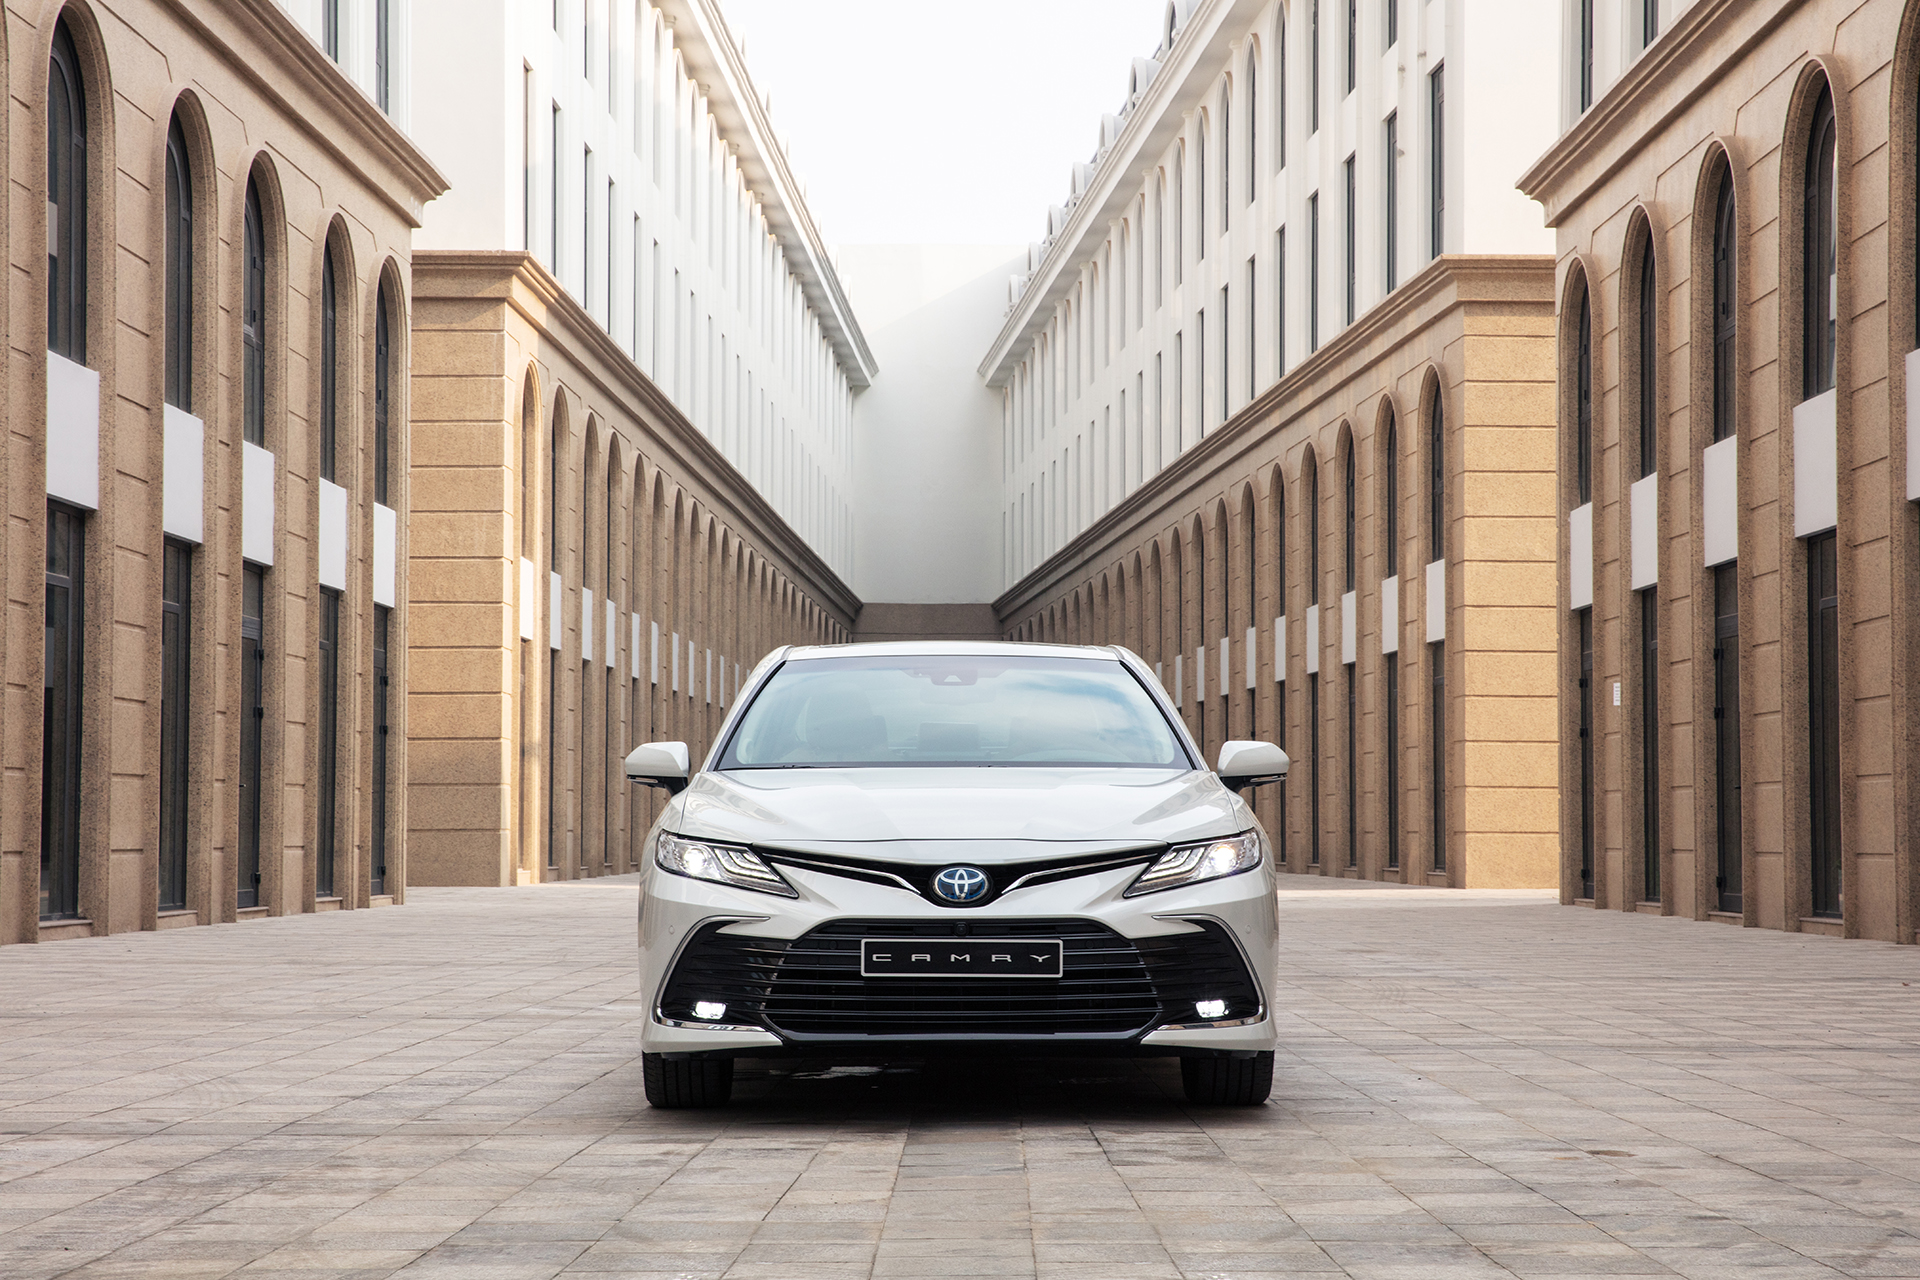 Chi tiết Toyota Camry 2022 phiên bản HV giá 1,441 tỷ đồng toyota-camry-5.jpg